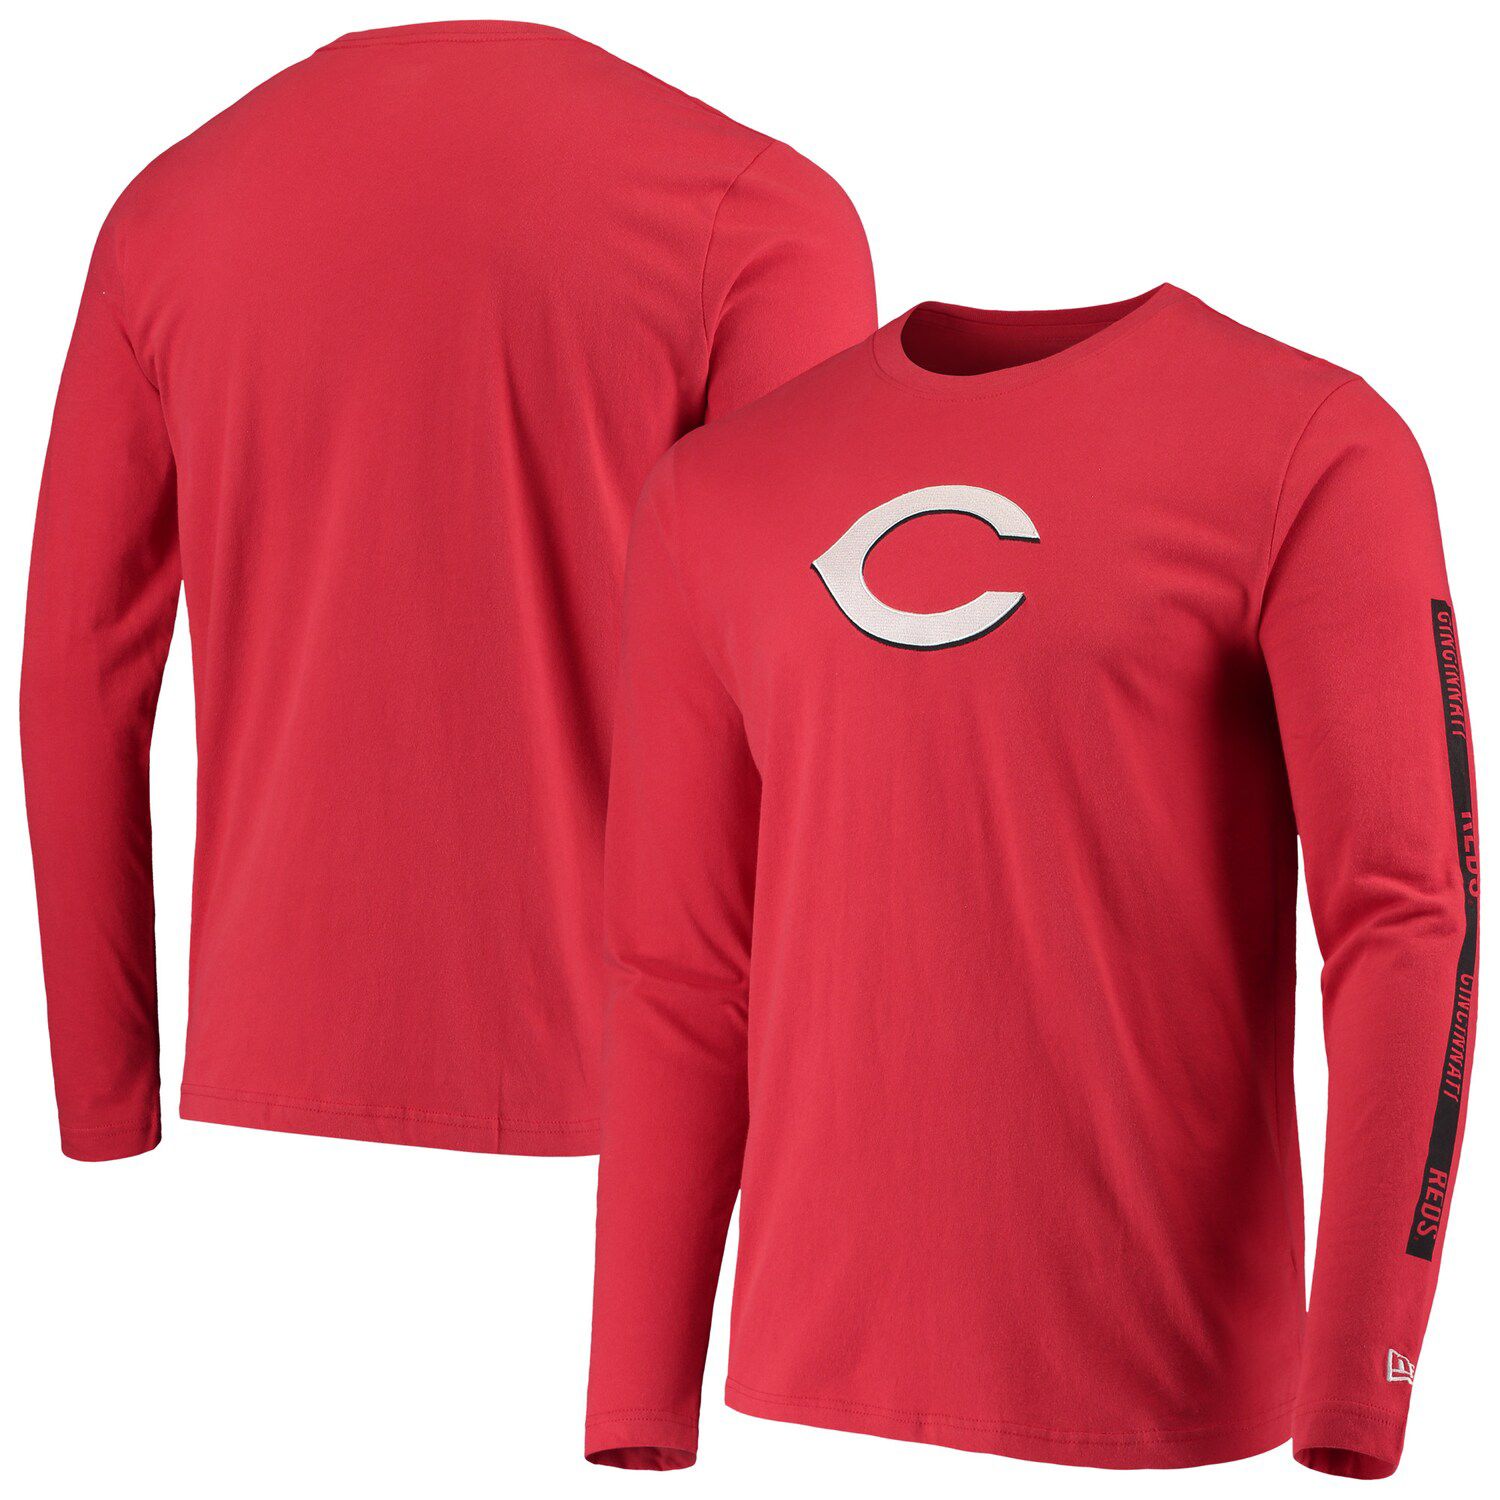 Cincinnati Reds Long Sleeve T-Shirt